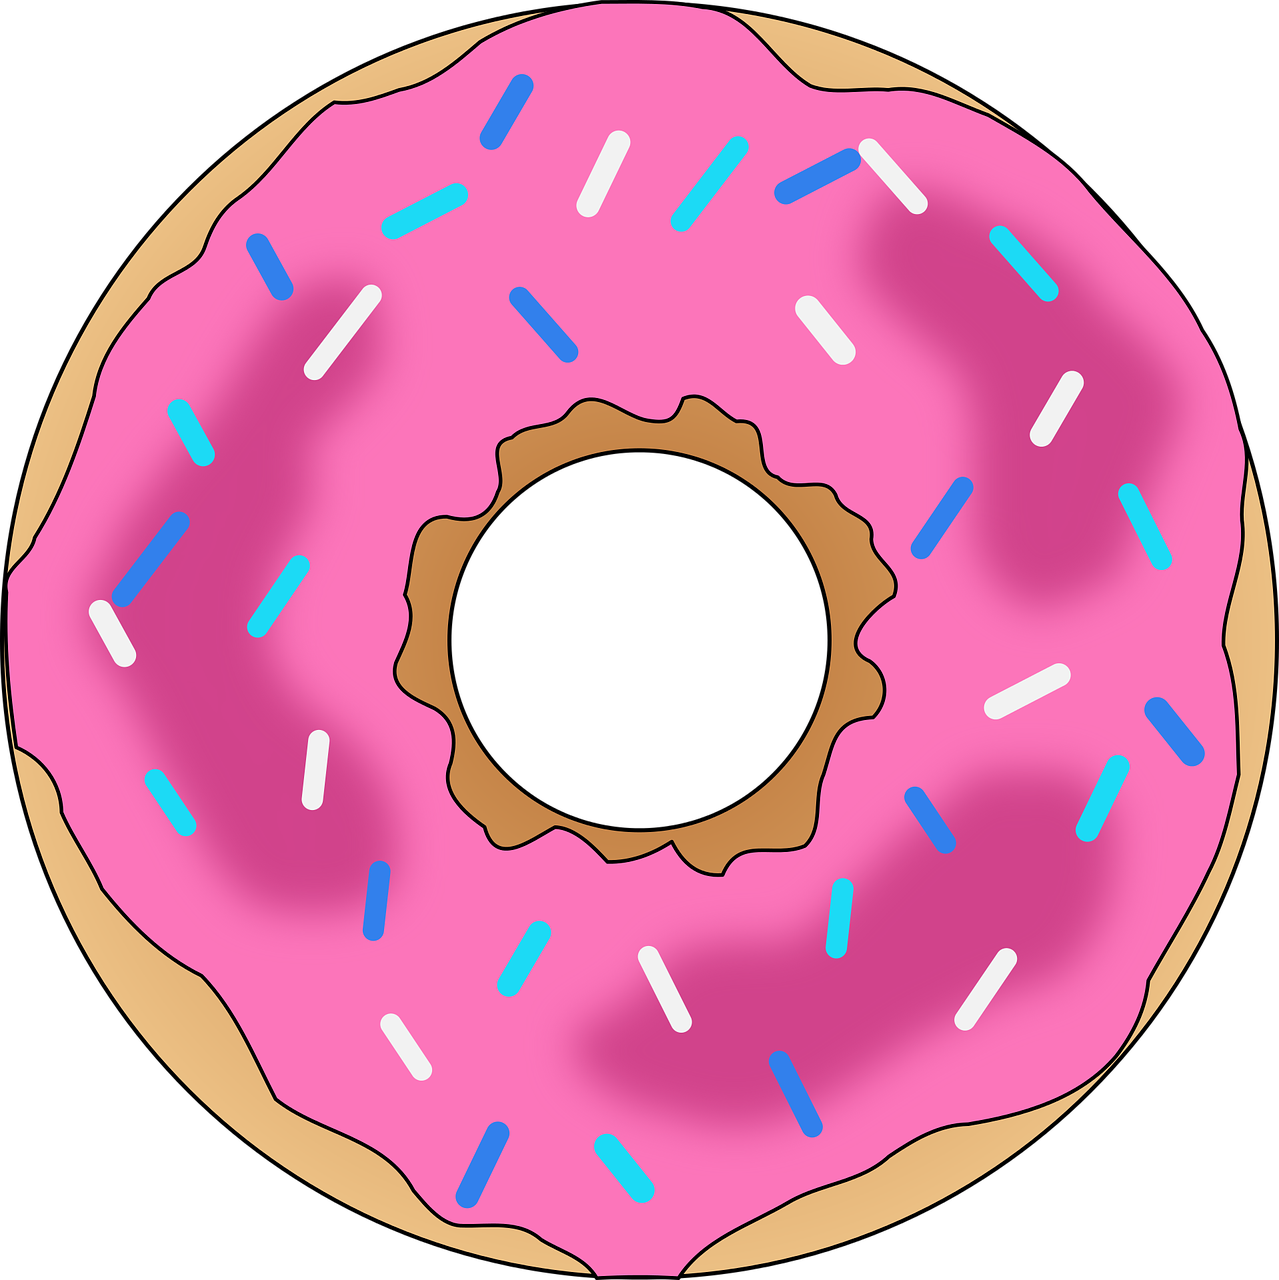 Pink Frosted Sprinkled Doughnut Illustration.png